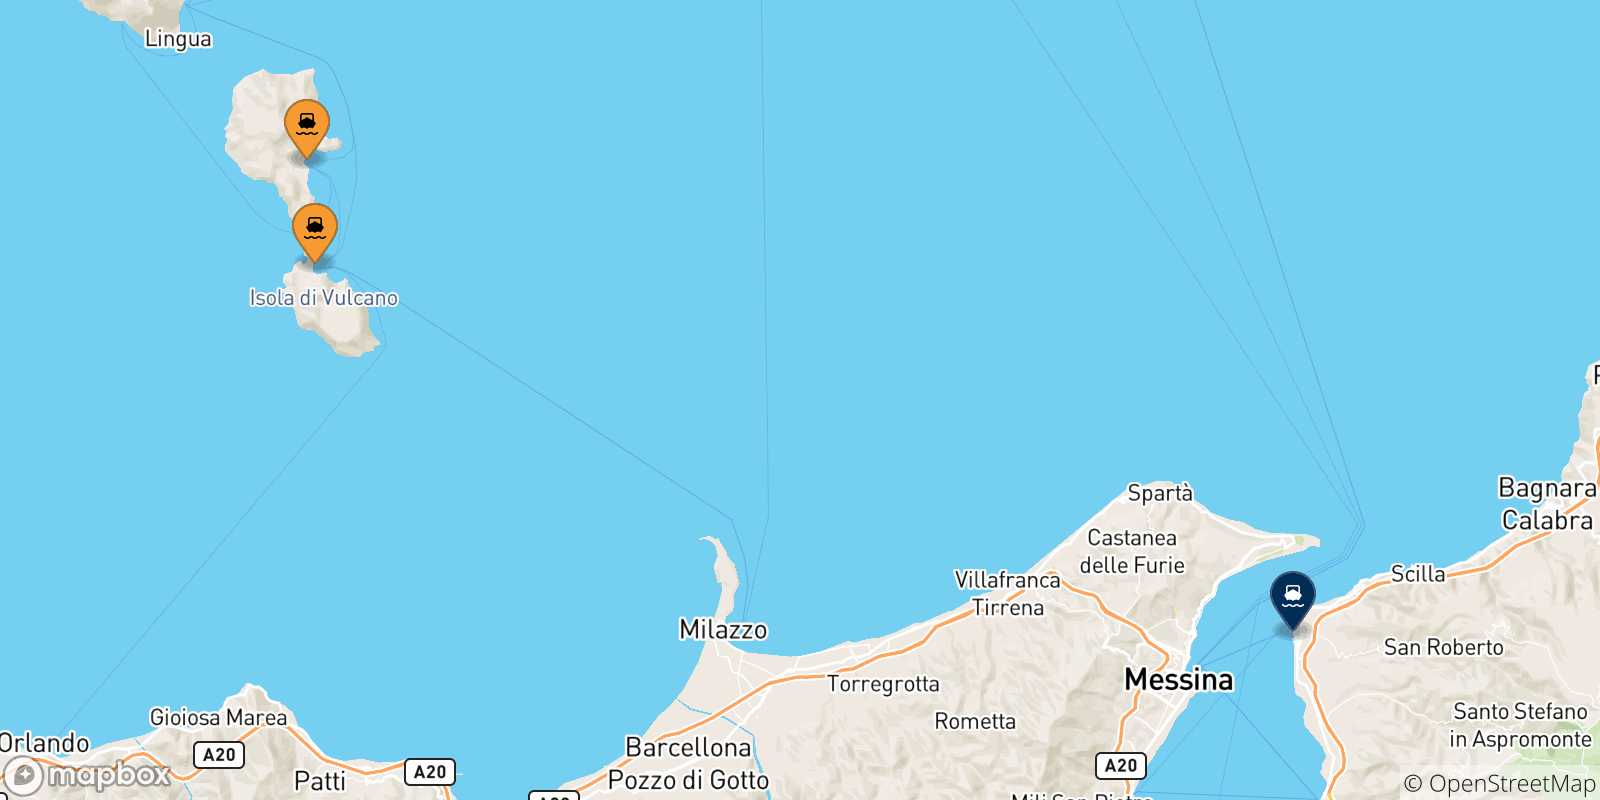 Mappa delle possibili rotte tra le Isole Eolie e Reggio Calabria